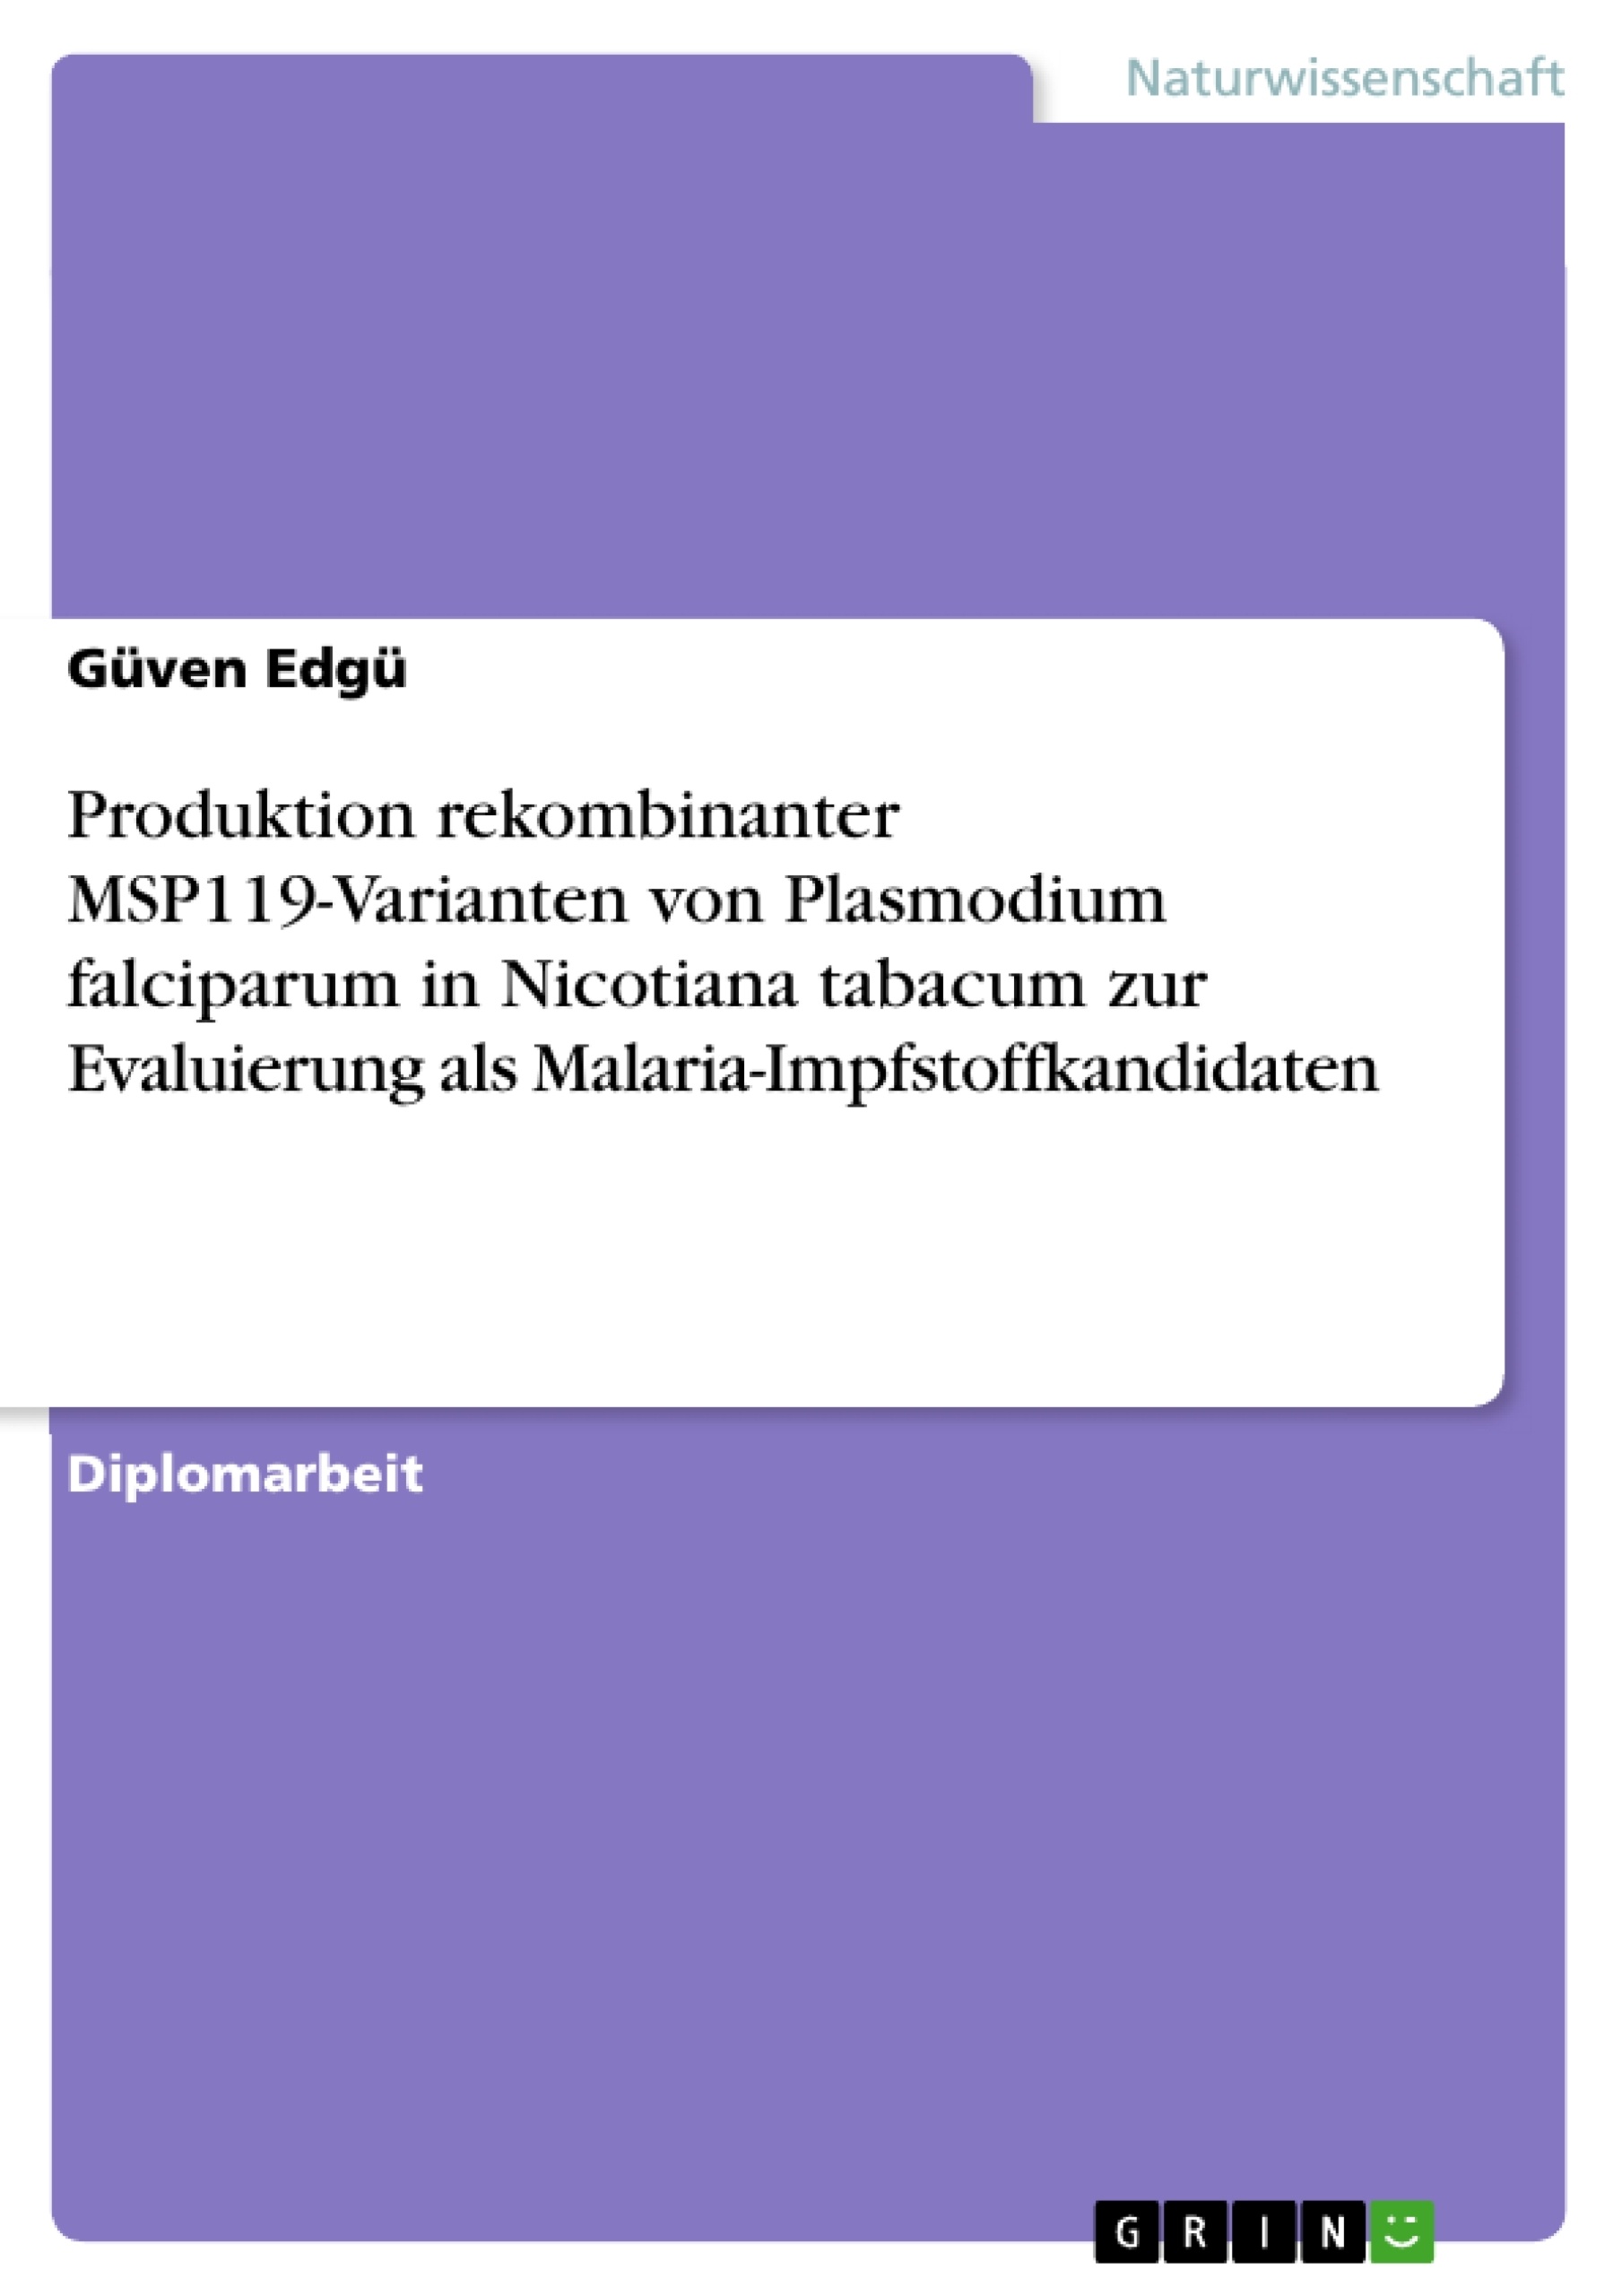 Título: Produktion rekombinanter MSP119-Varianten von Plasmodium falciparum in Nicotiana tabacum zur Evaluierung als Malaria-Impfstoffkandidaten